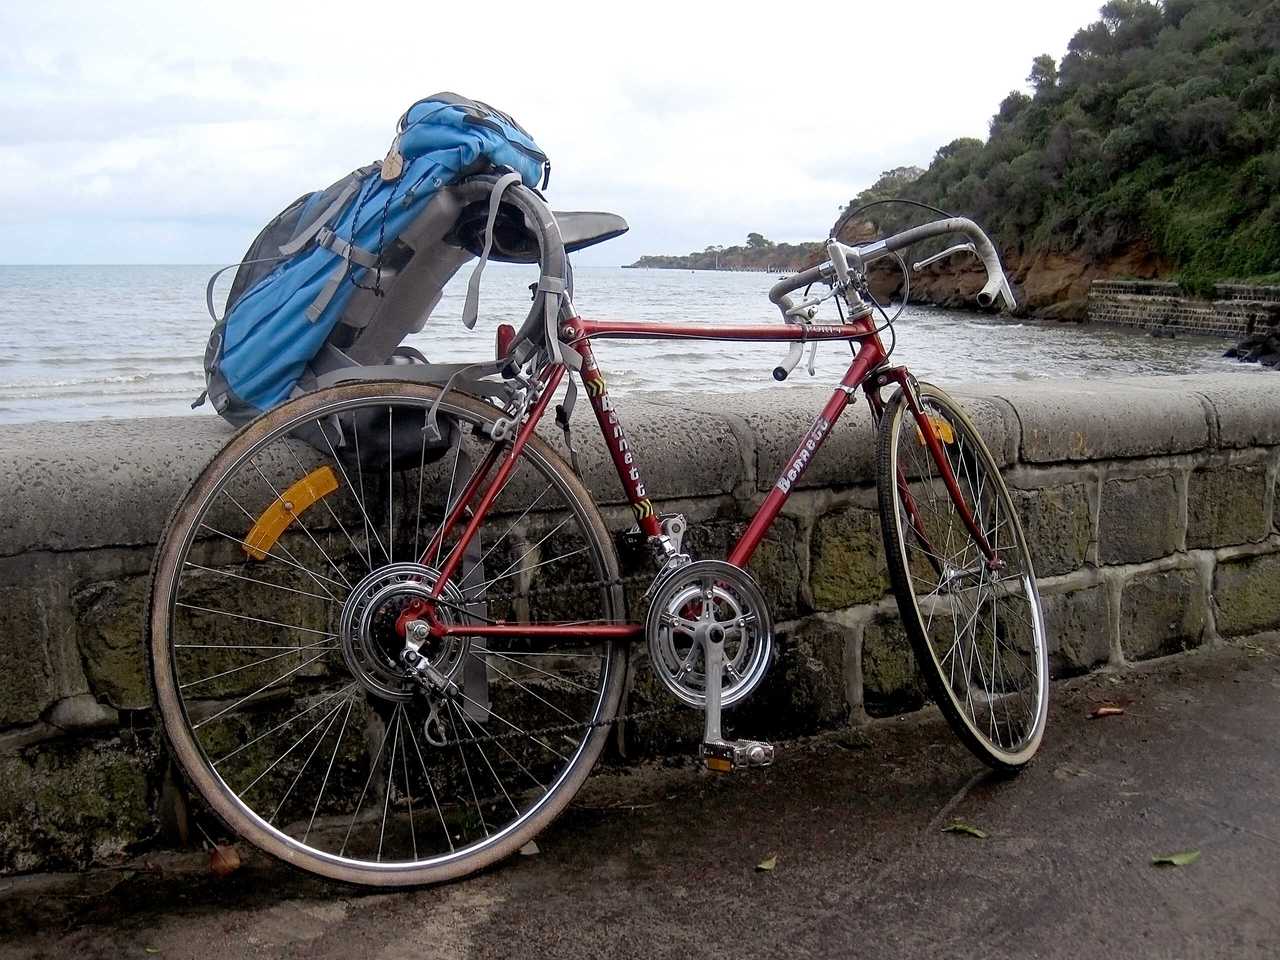 La mia prima bici australiana acquistata di seconda mano su Gumtree. Mordialloc, VIC, Australia. 2012.